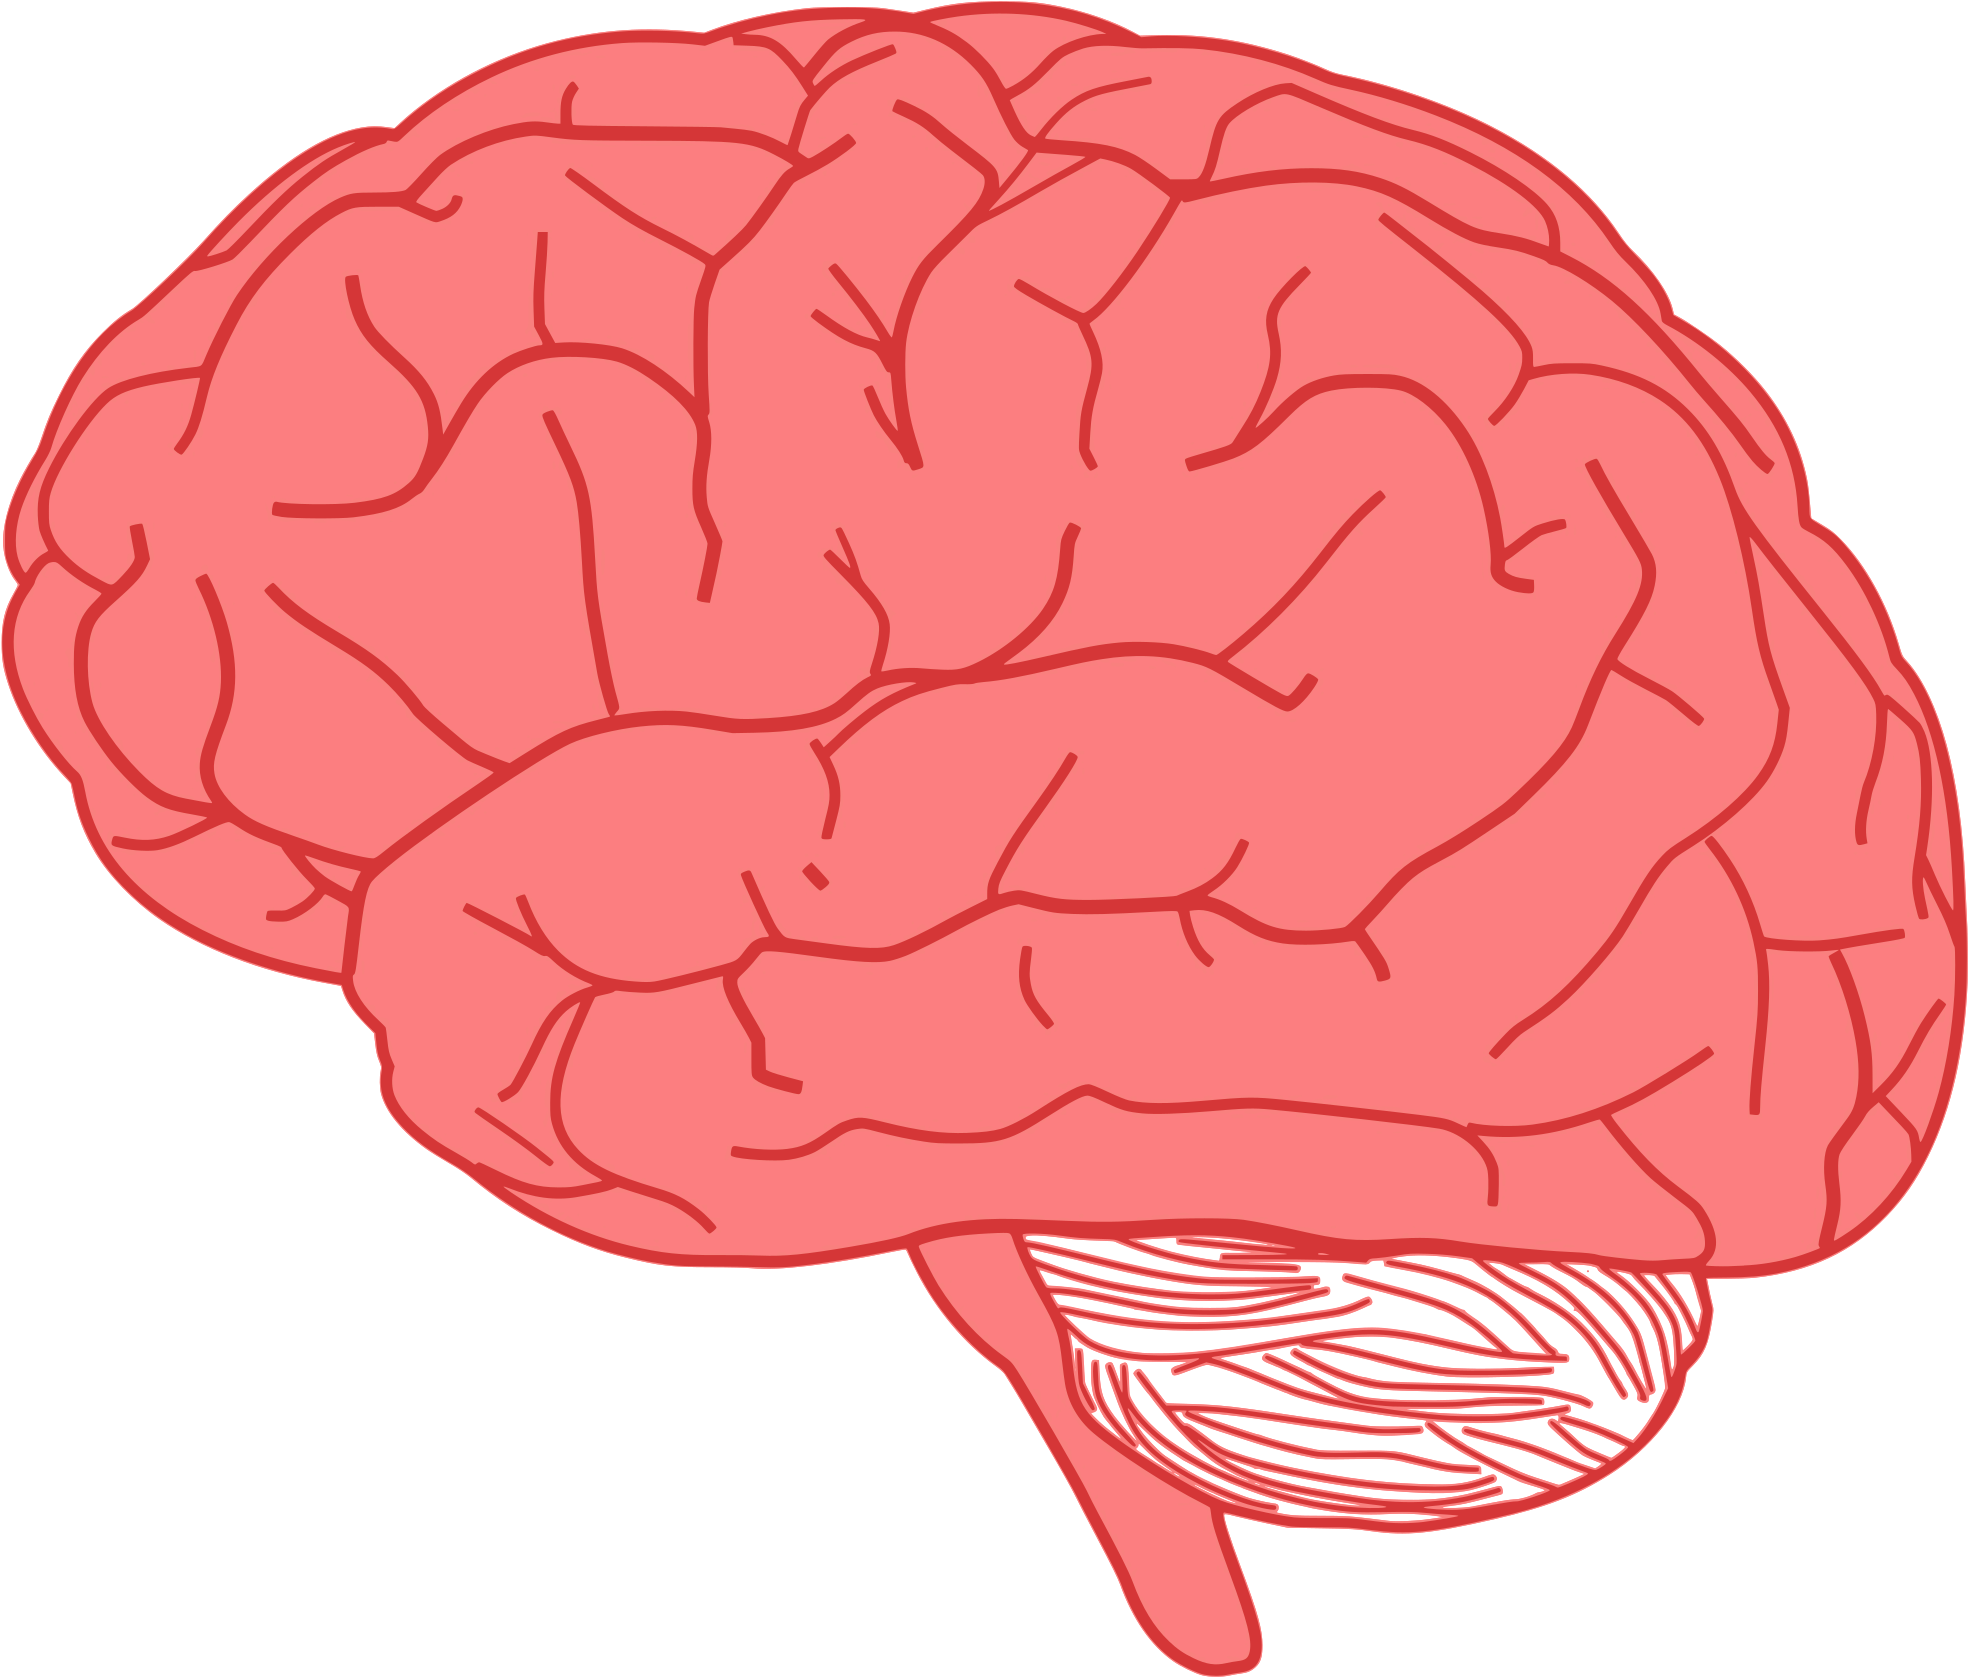 Brain face. Изображение мозга человека. Векторный мозг.